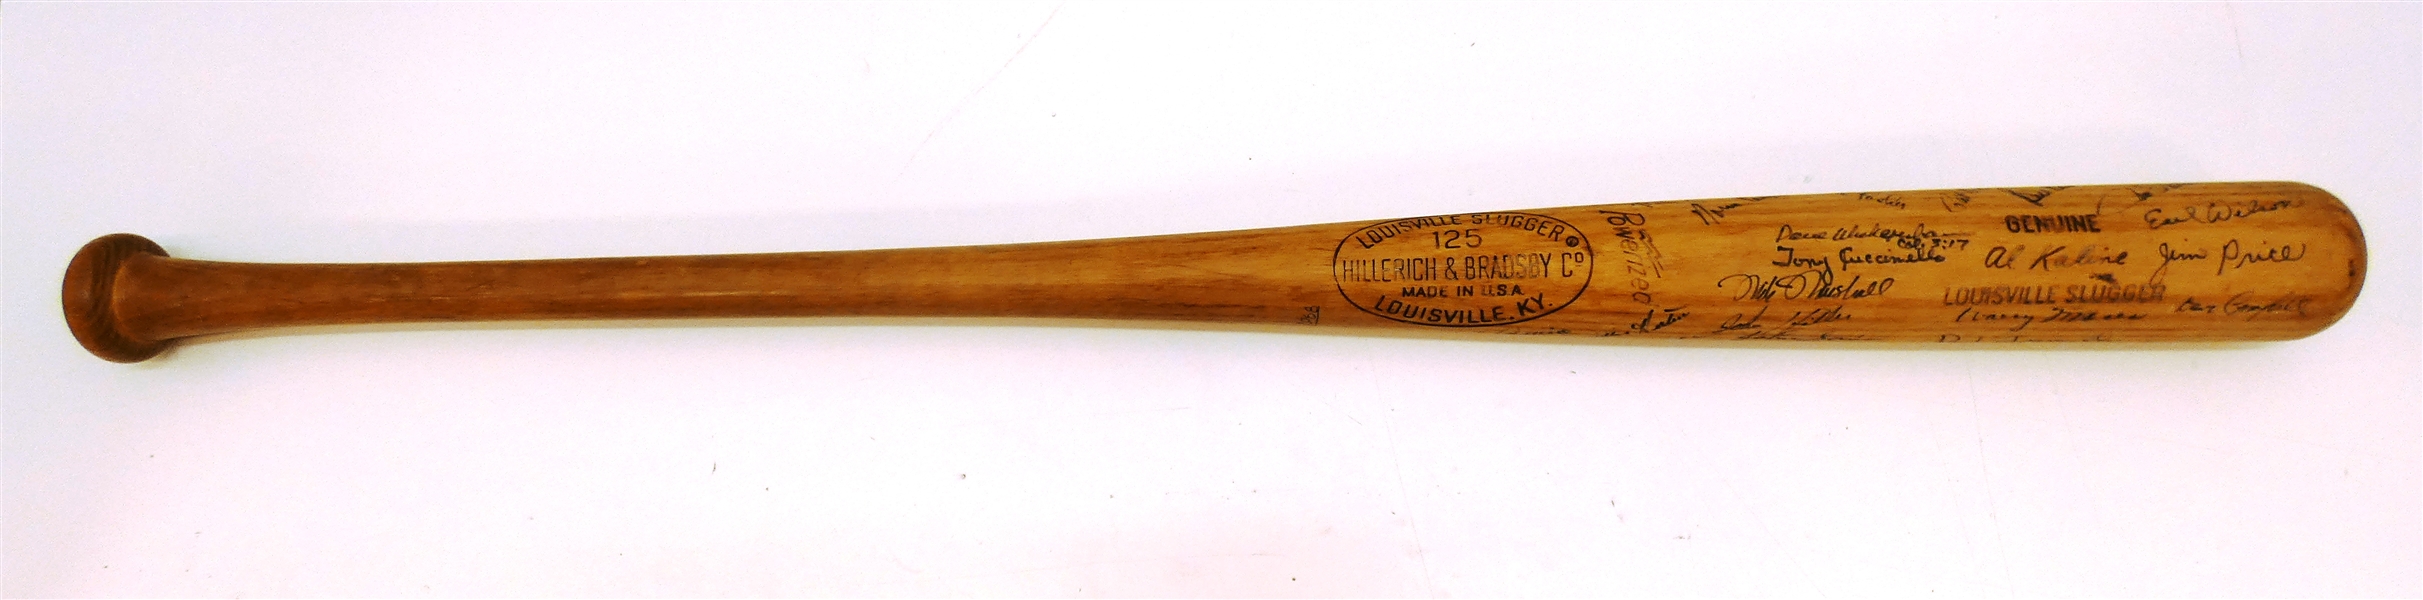 Al Kaline Game Used? 1967/68 Tigers Signed Bat